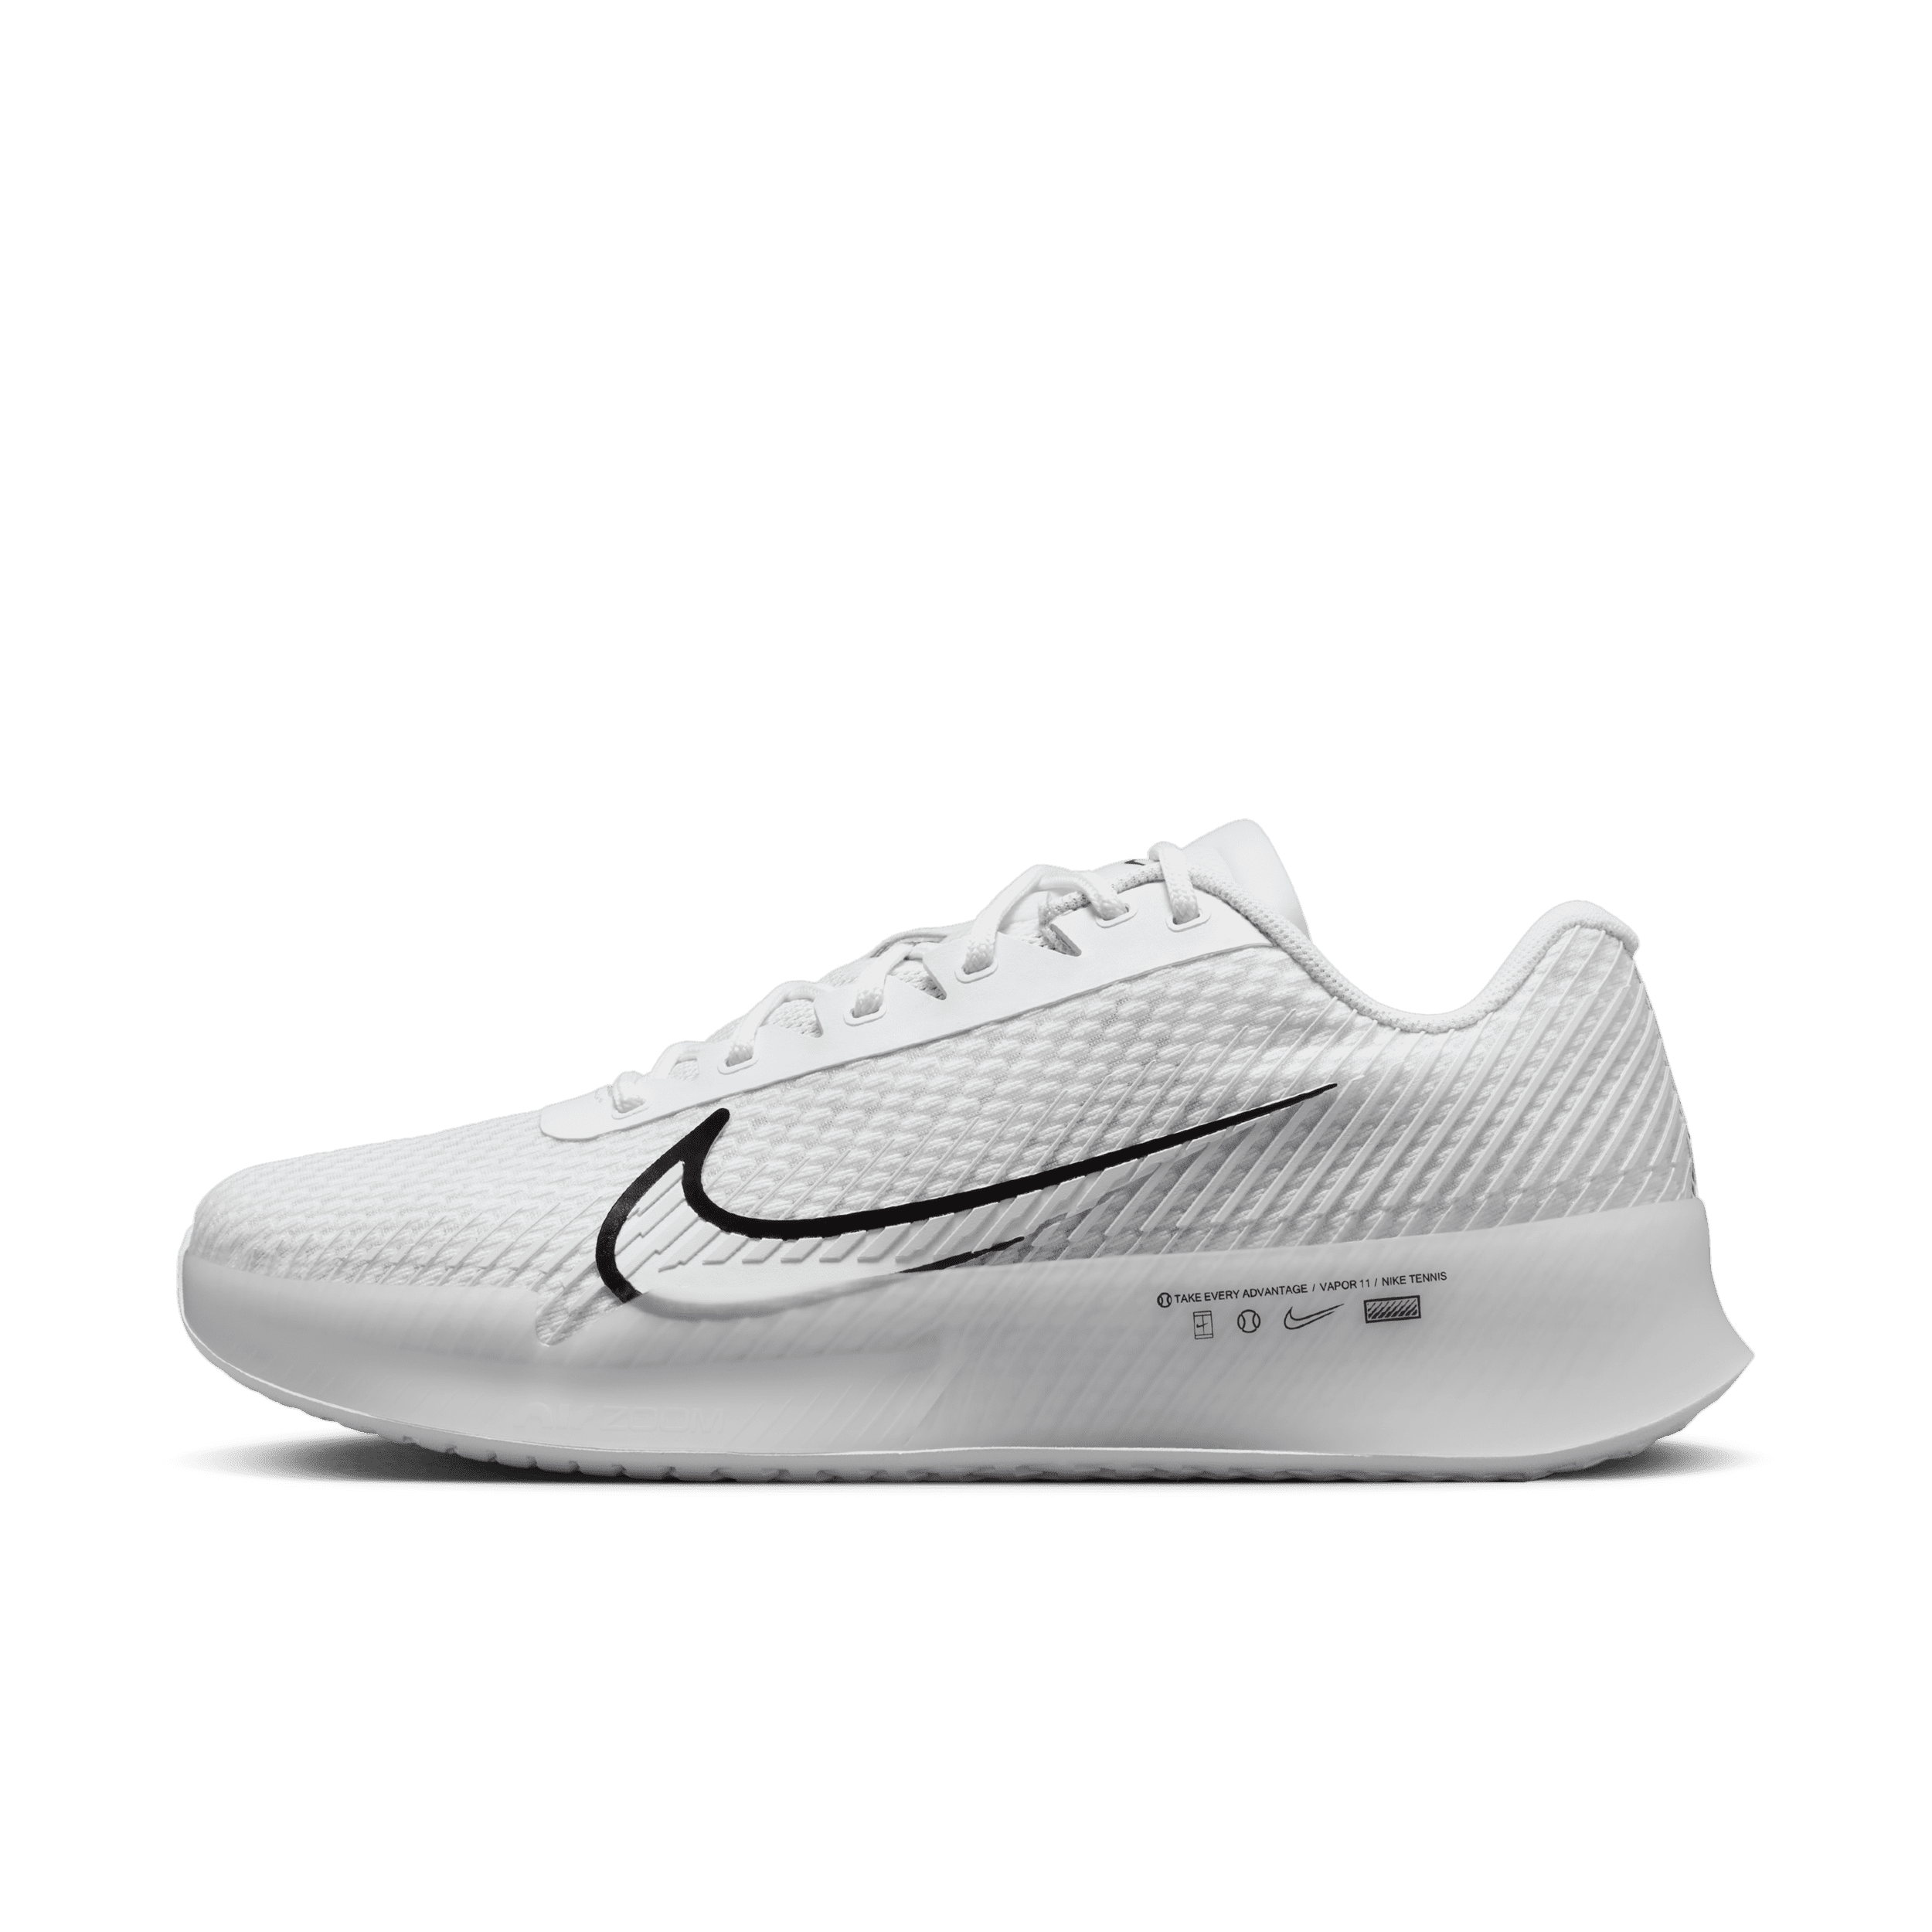 NikeCourt Air Zoom Vapor 11-hardcourt-tennissko til mænd - hvid